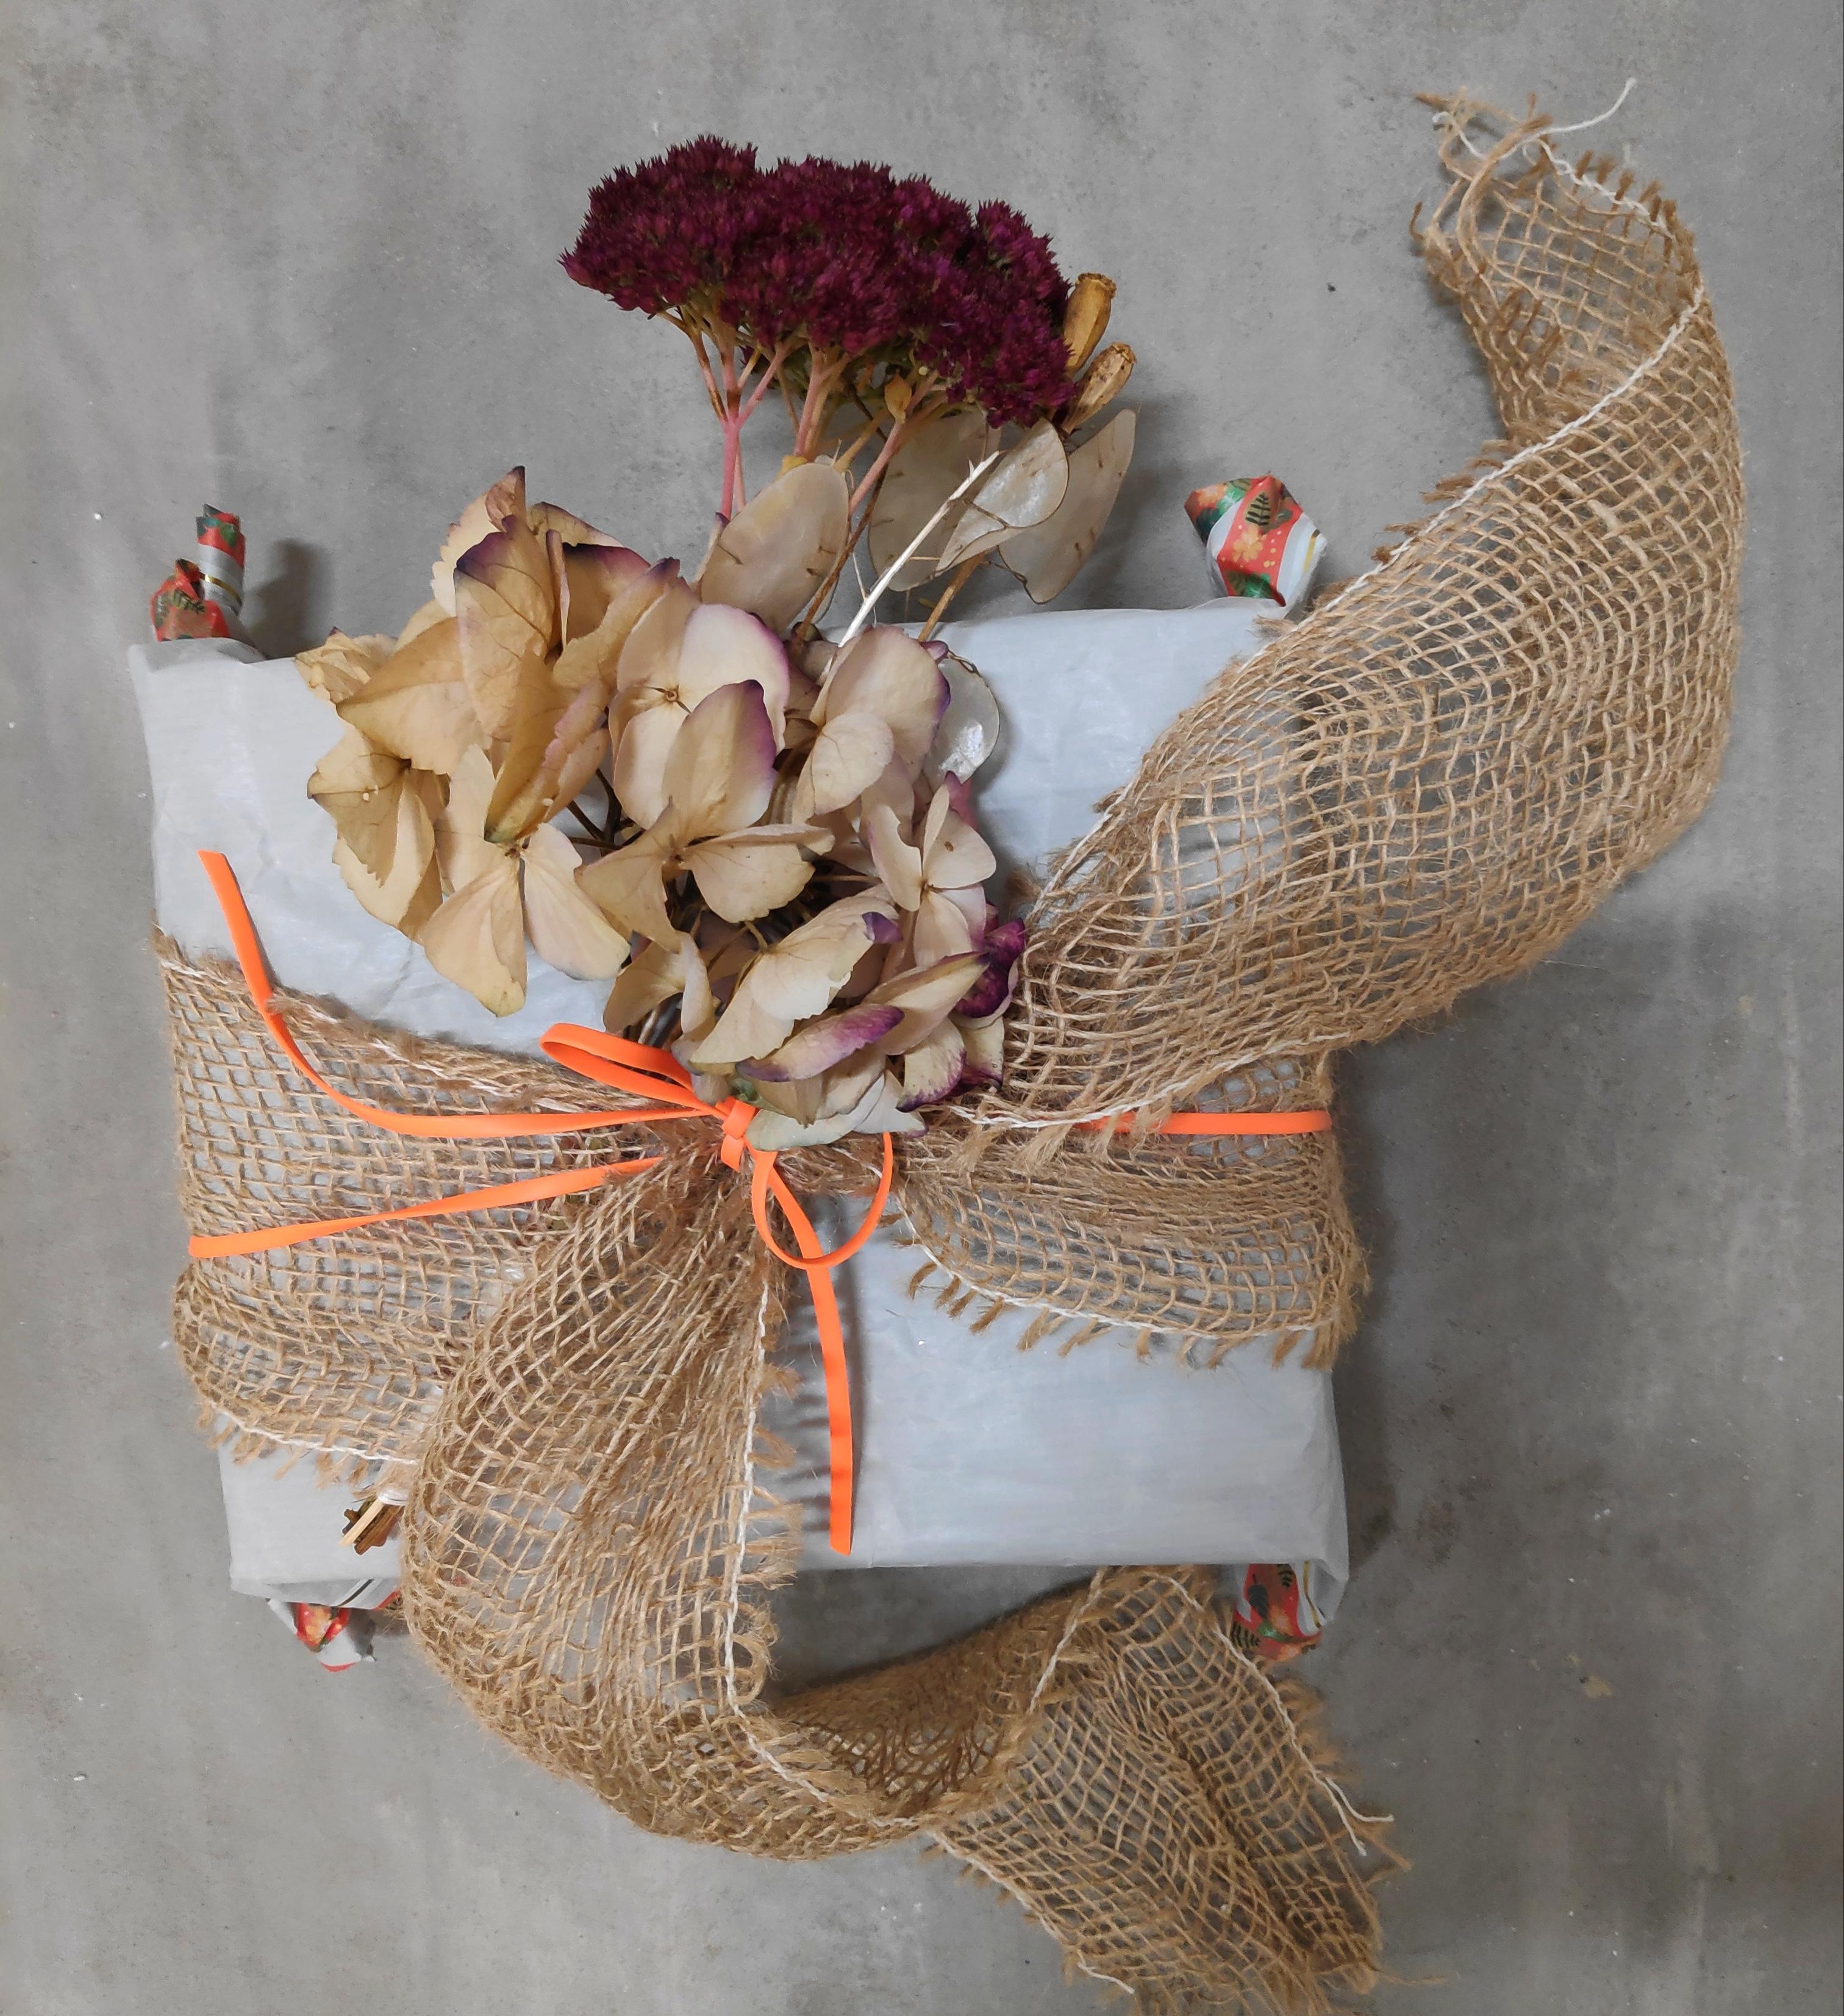 .Herbstliche Verpackung für herbstliche Geburtstagskinder.
#Geschenk #Geschenkverpackung #Upcycling #Trockenblumen